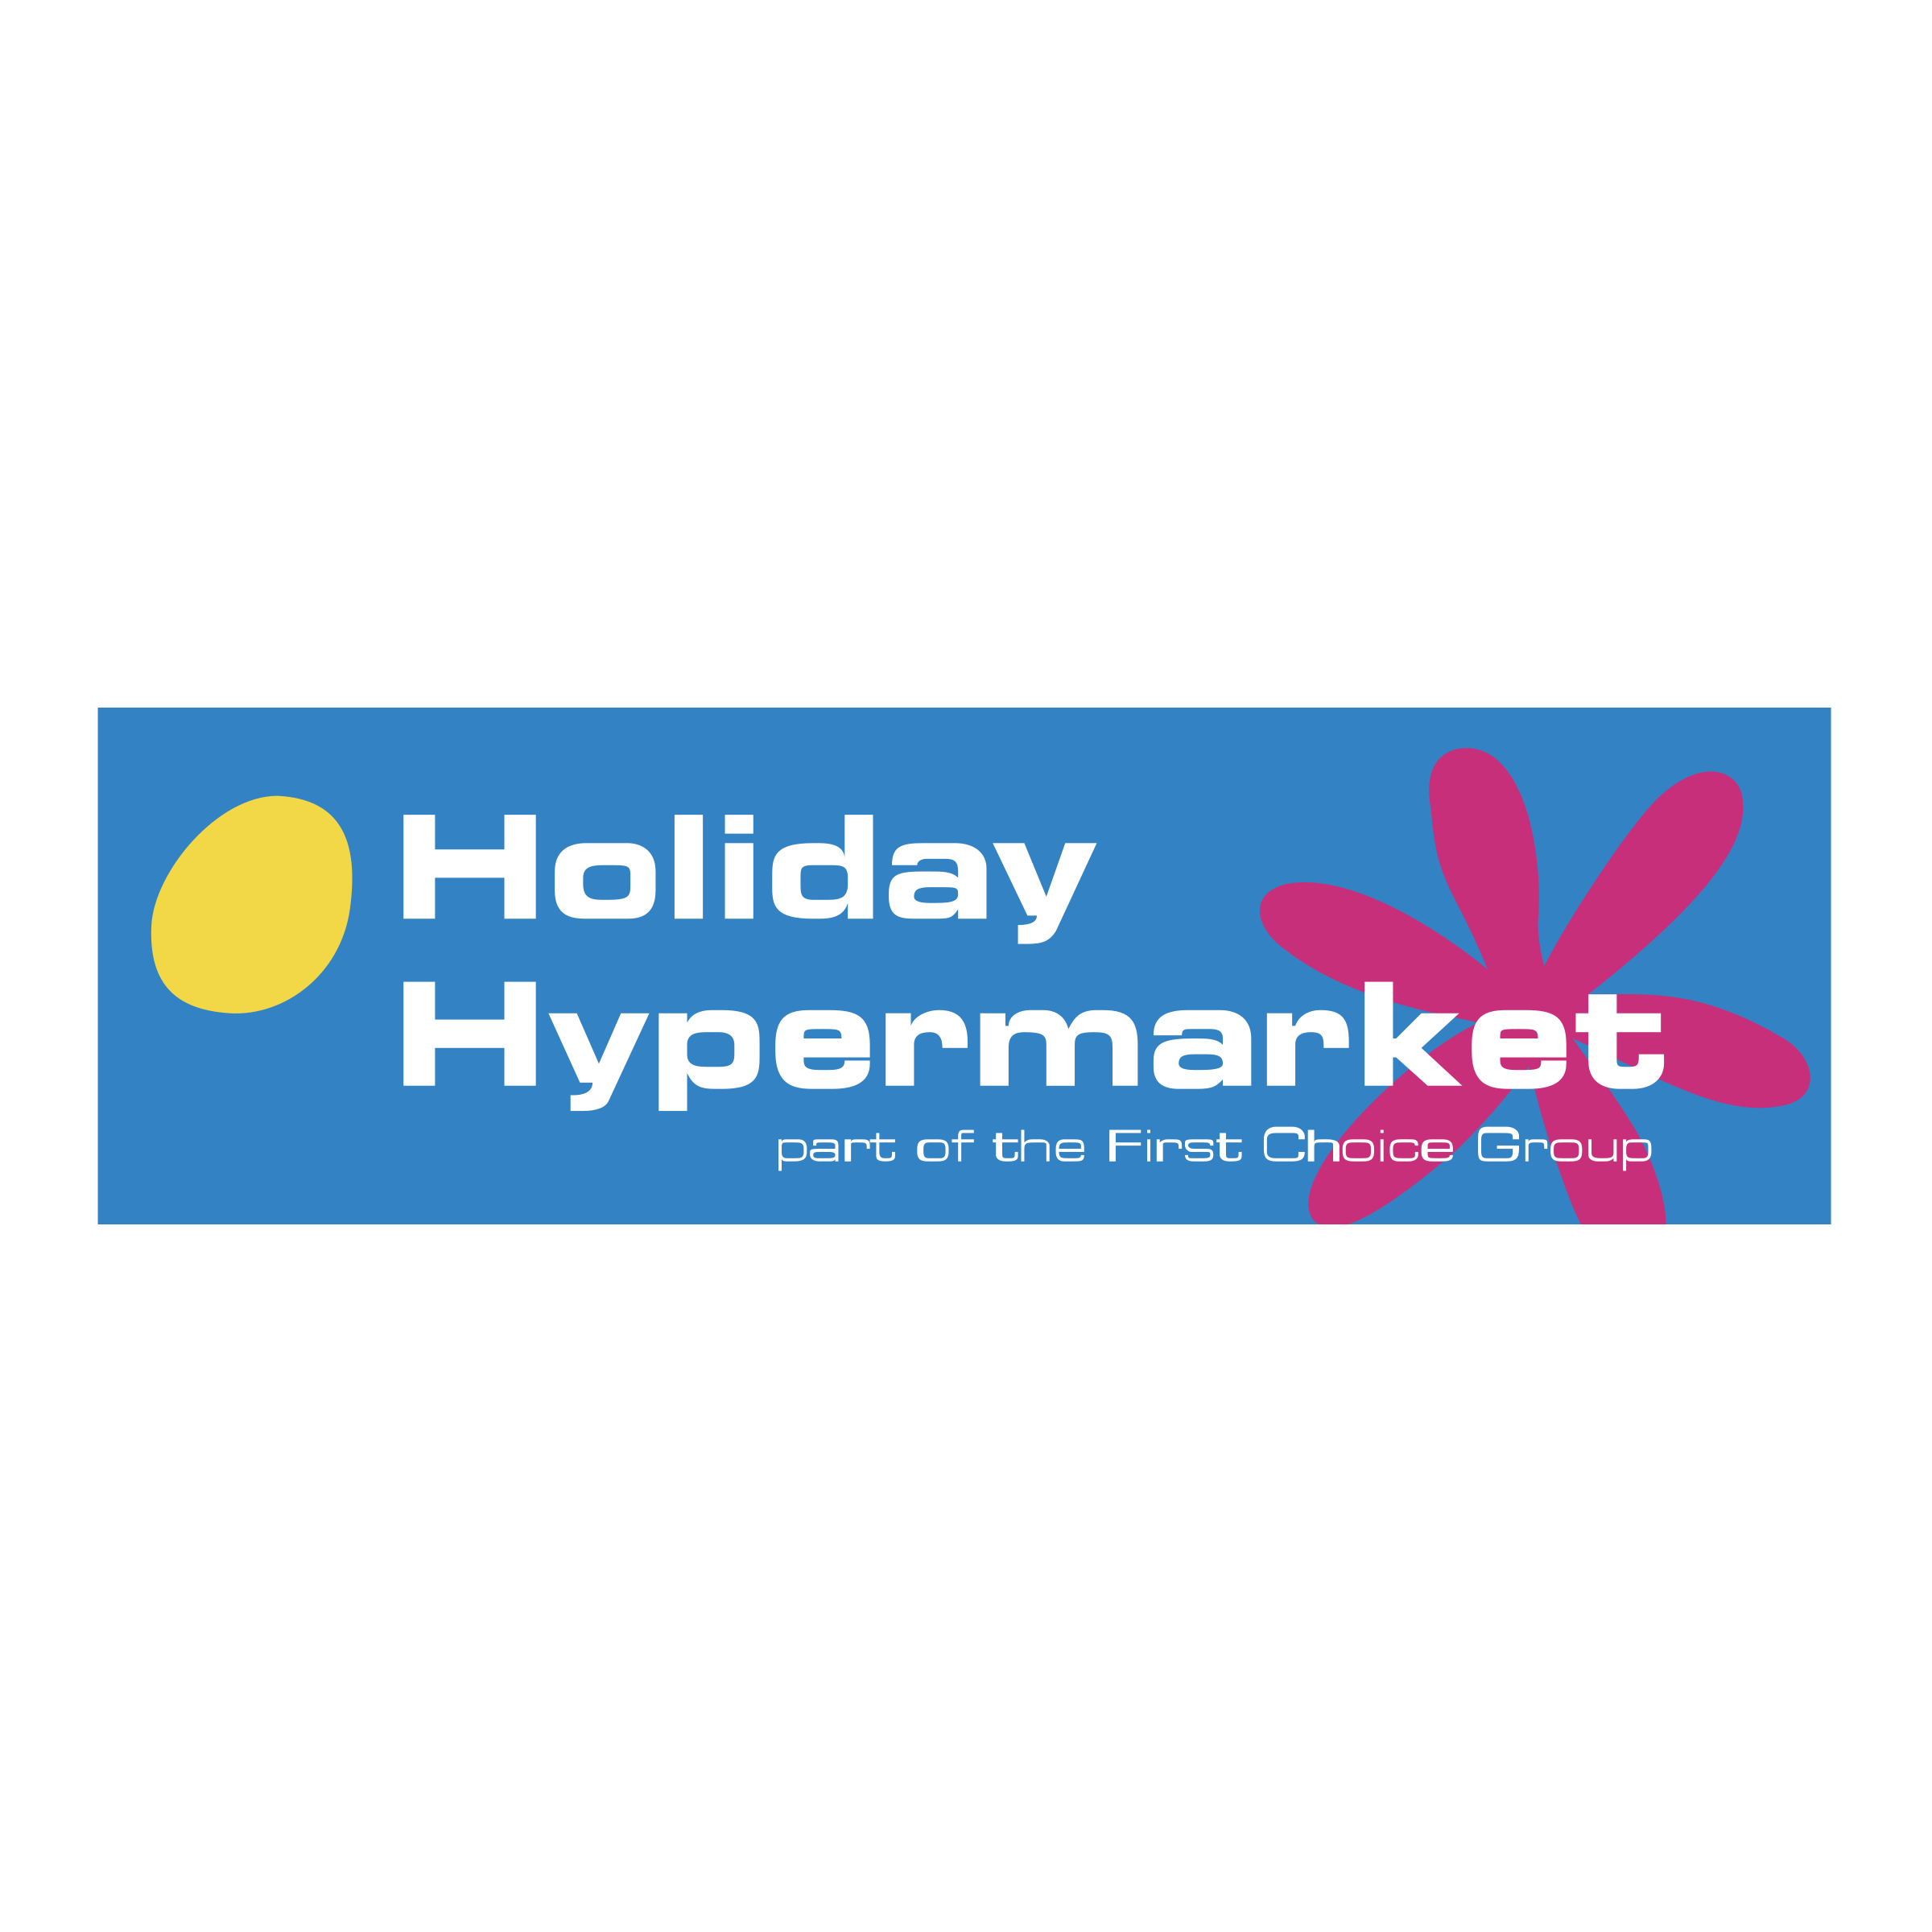 Hypermarket Logo - Holiday Hypermarket Logo PNG Transparent & SVG Vector